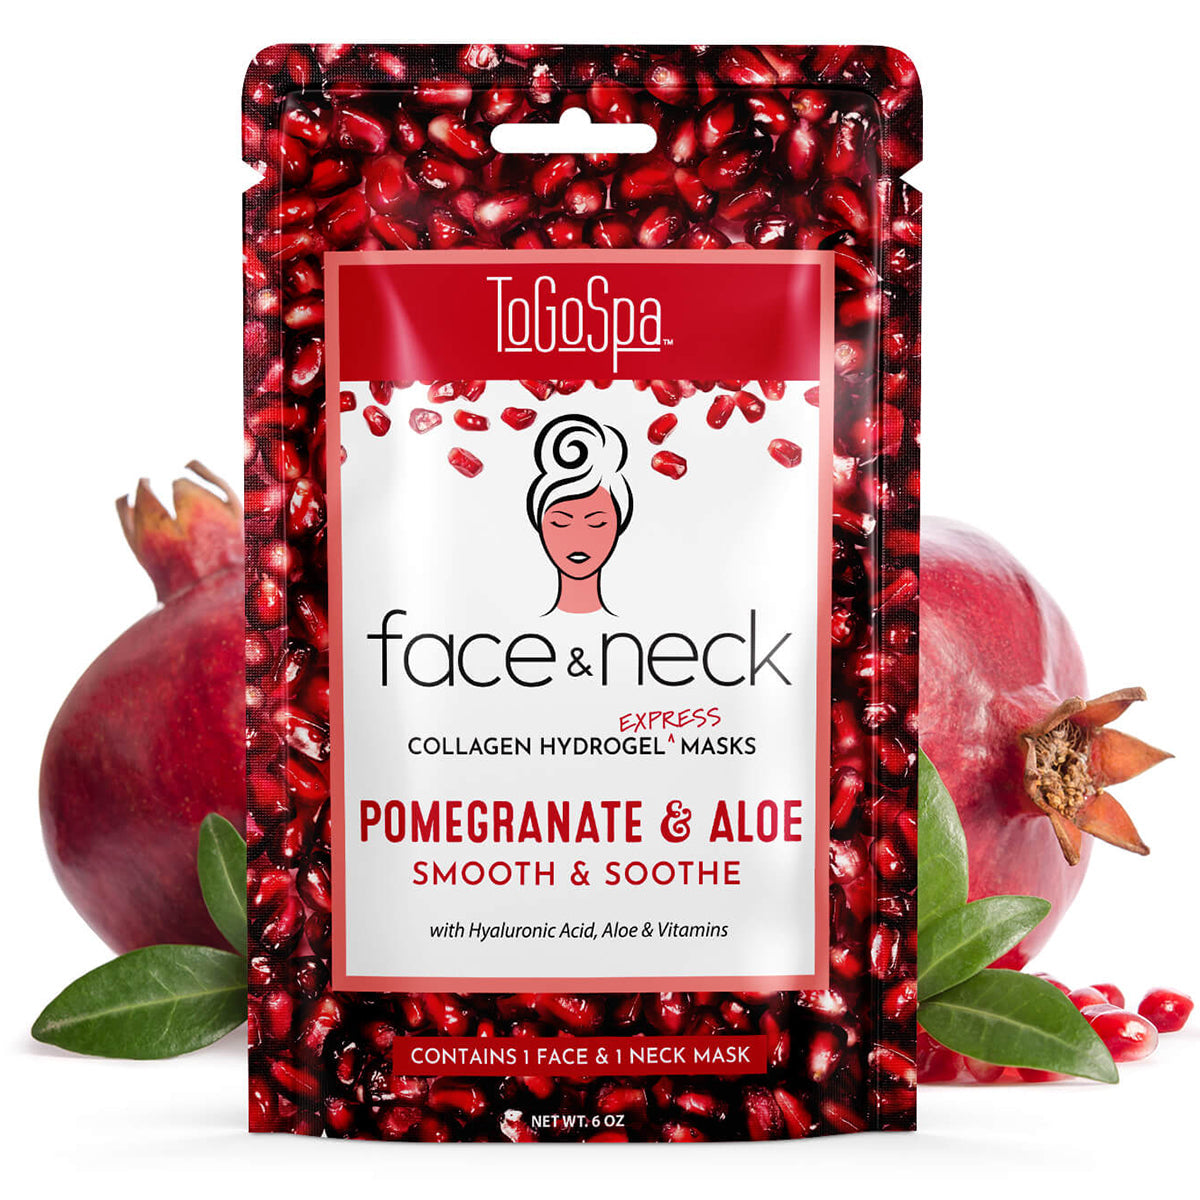 Pomegranate & Aloe Face & Neck Express Masks by ToGoSpa